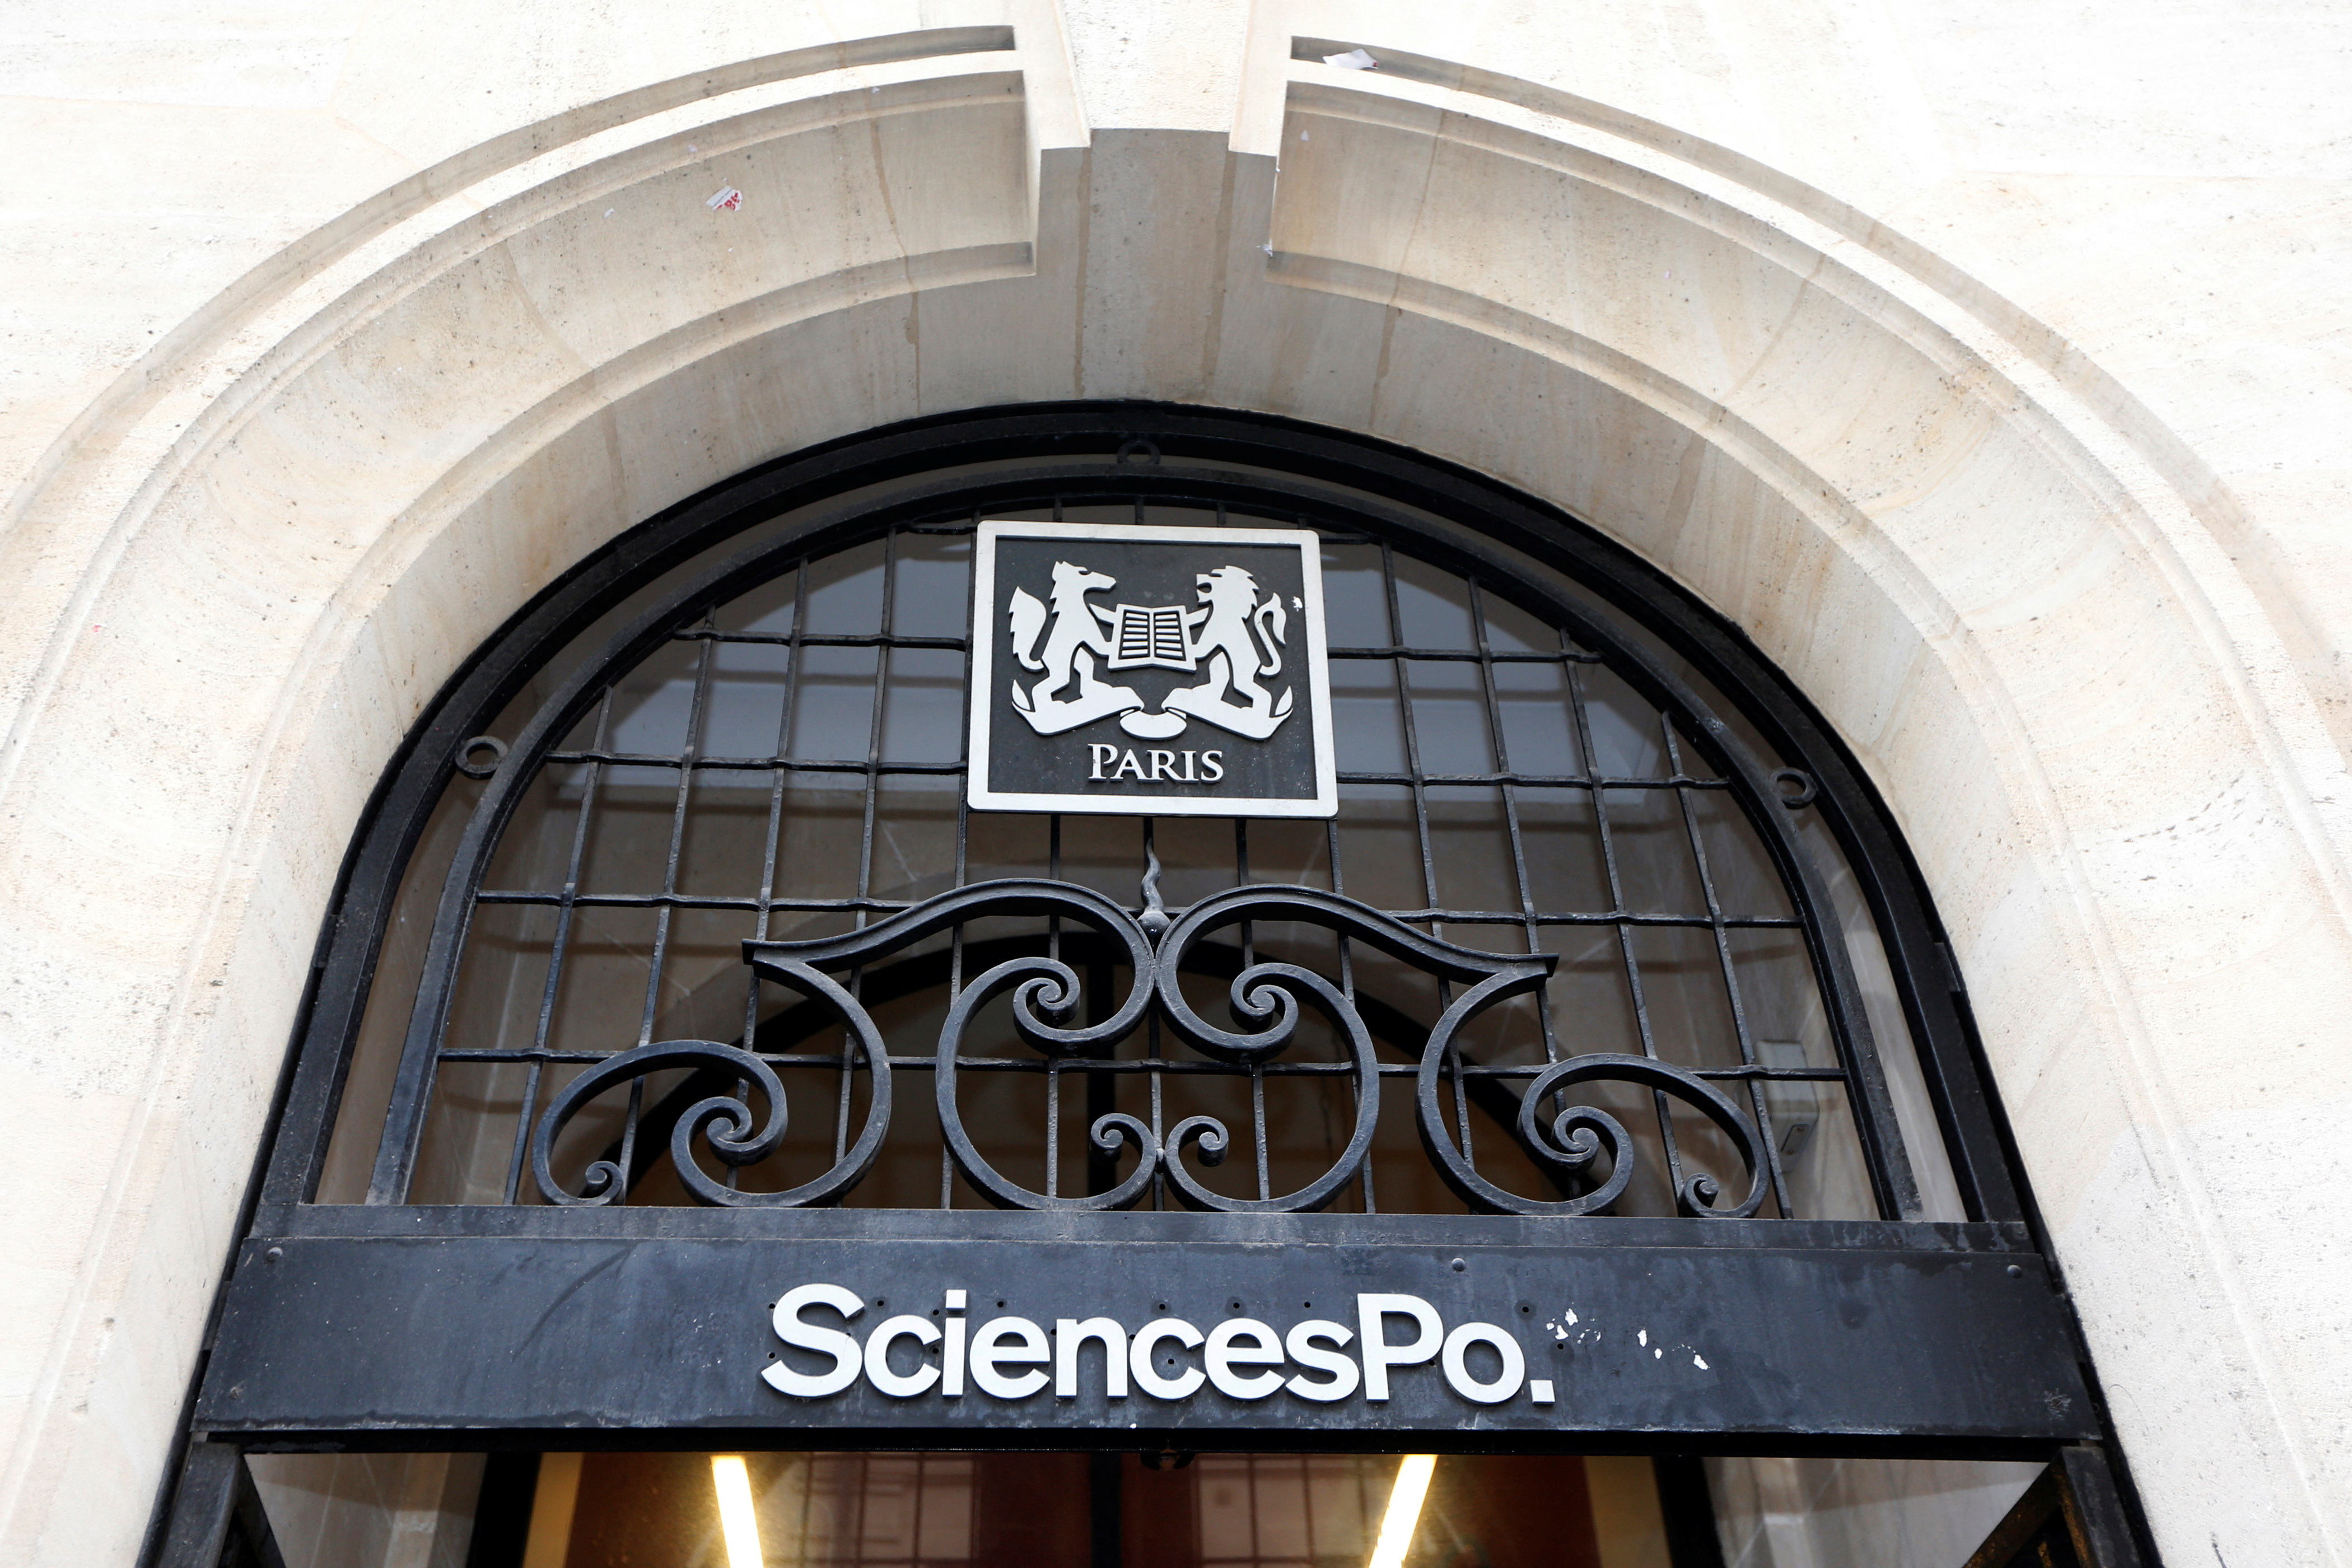 Institute of Political Studies (IEP) or "Sciences Po" main entrance at the Institute in Paris